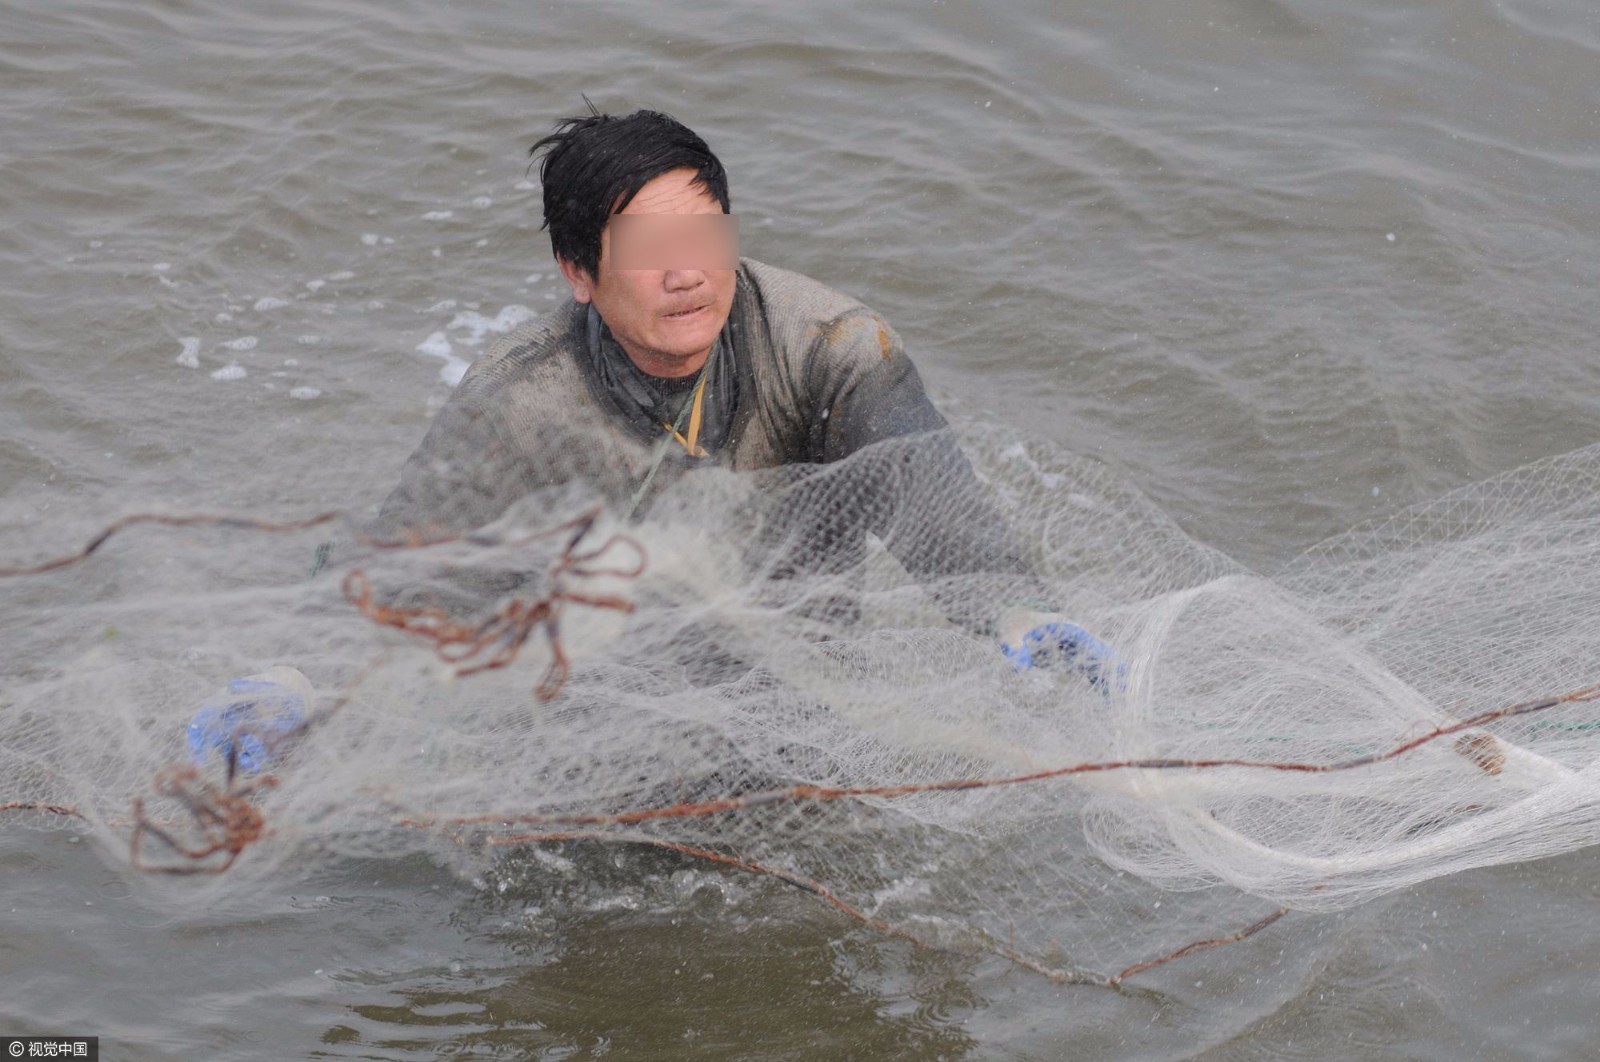 鱼洄游产卵 市民张网捕捞半小时获几十斤